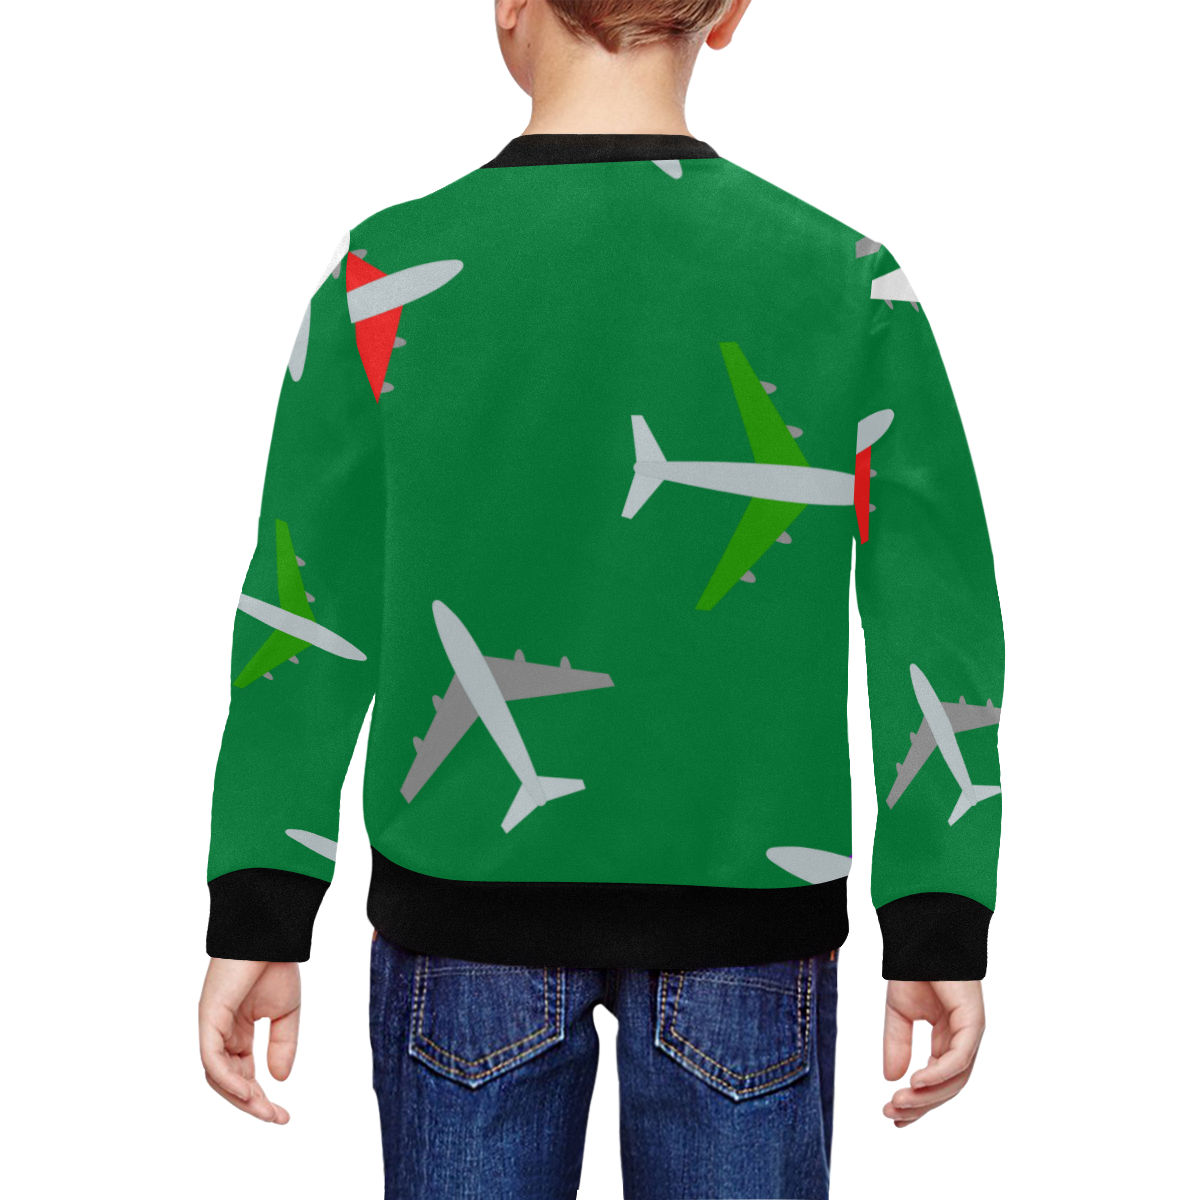 sudadera de niño con diseño de aviones All Over Print Crewneck Sweatshirt for Kids (Model H29)